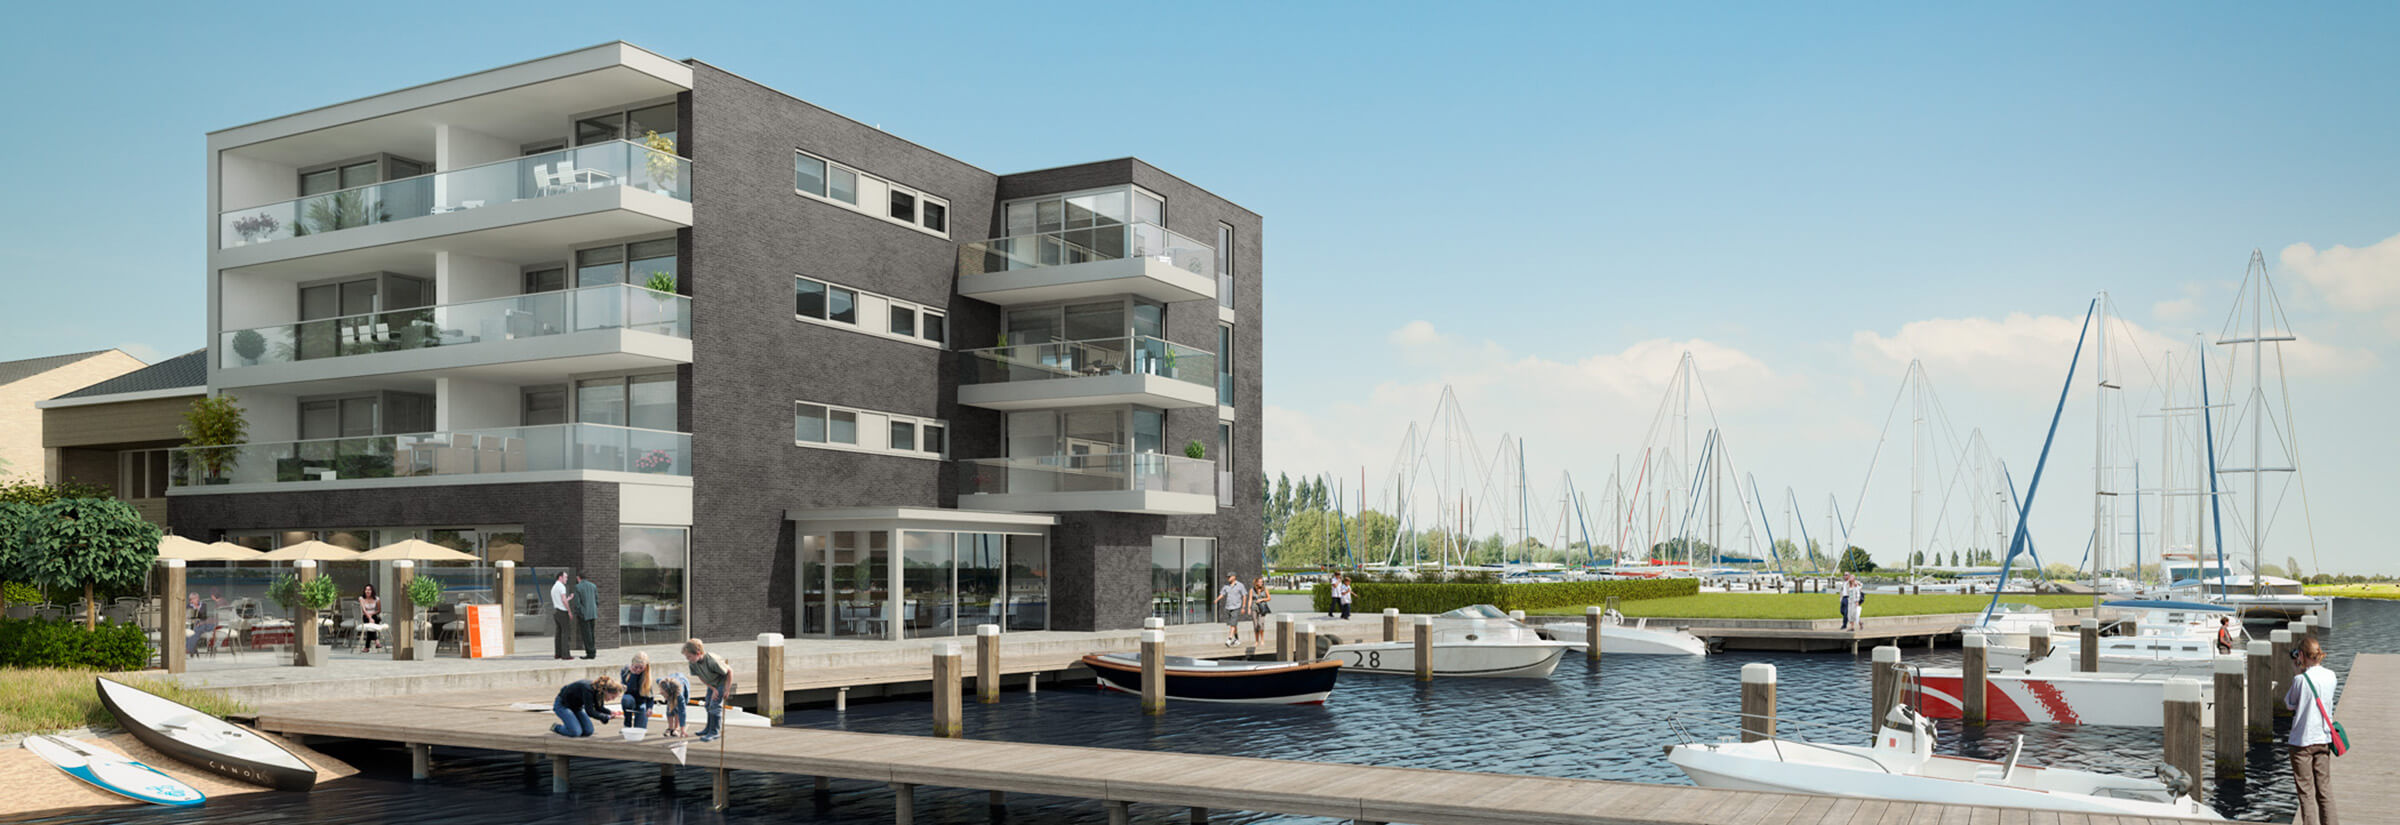 3D Visuals De Veerse Muze modern vakantiewoningencomplex aan het water met bootsteiger en horeca.